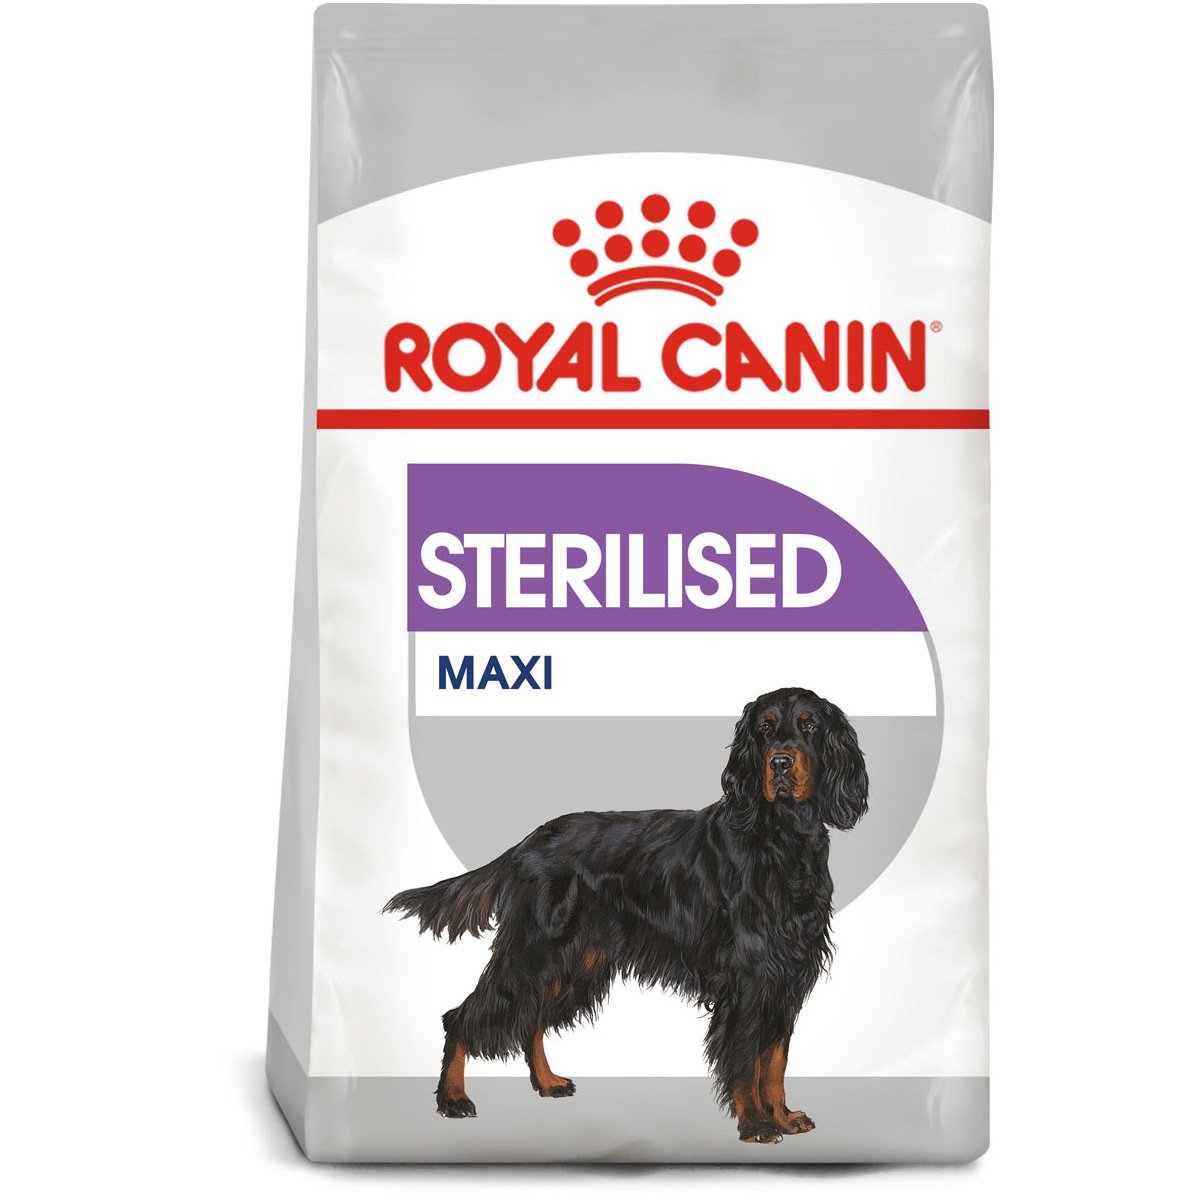 ROYAL CANIN STERILISED MAXI Trockenfutter für kastrierte große Hunde 3kg von Royal Canin